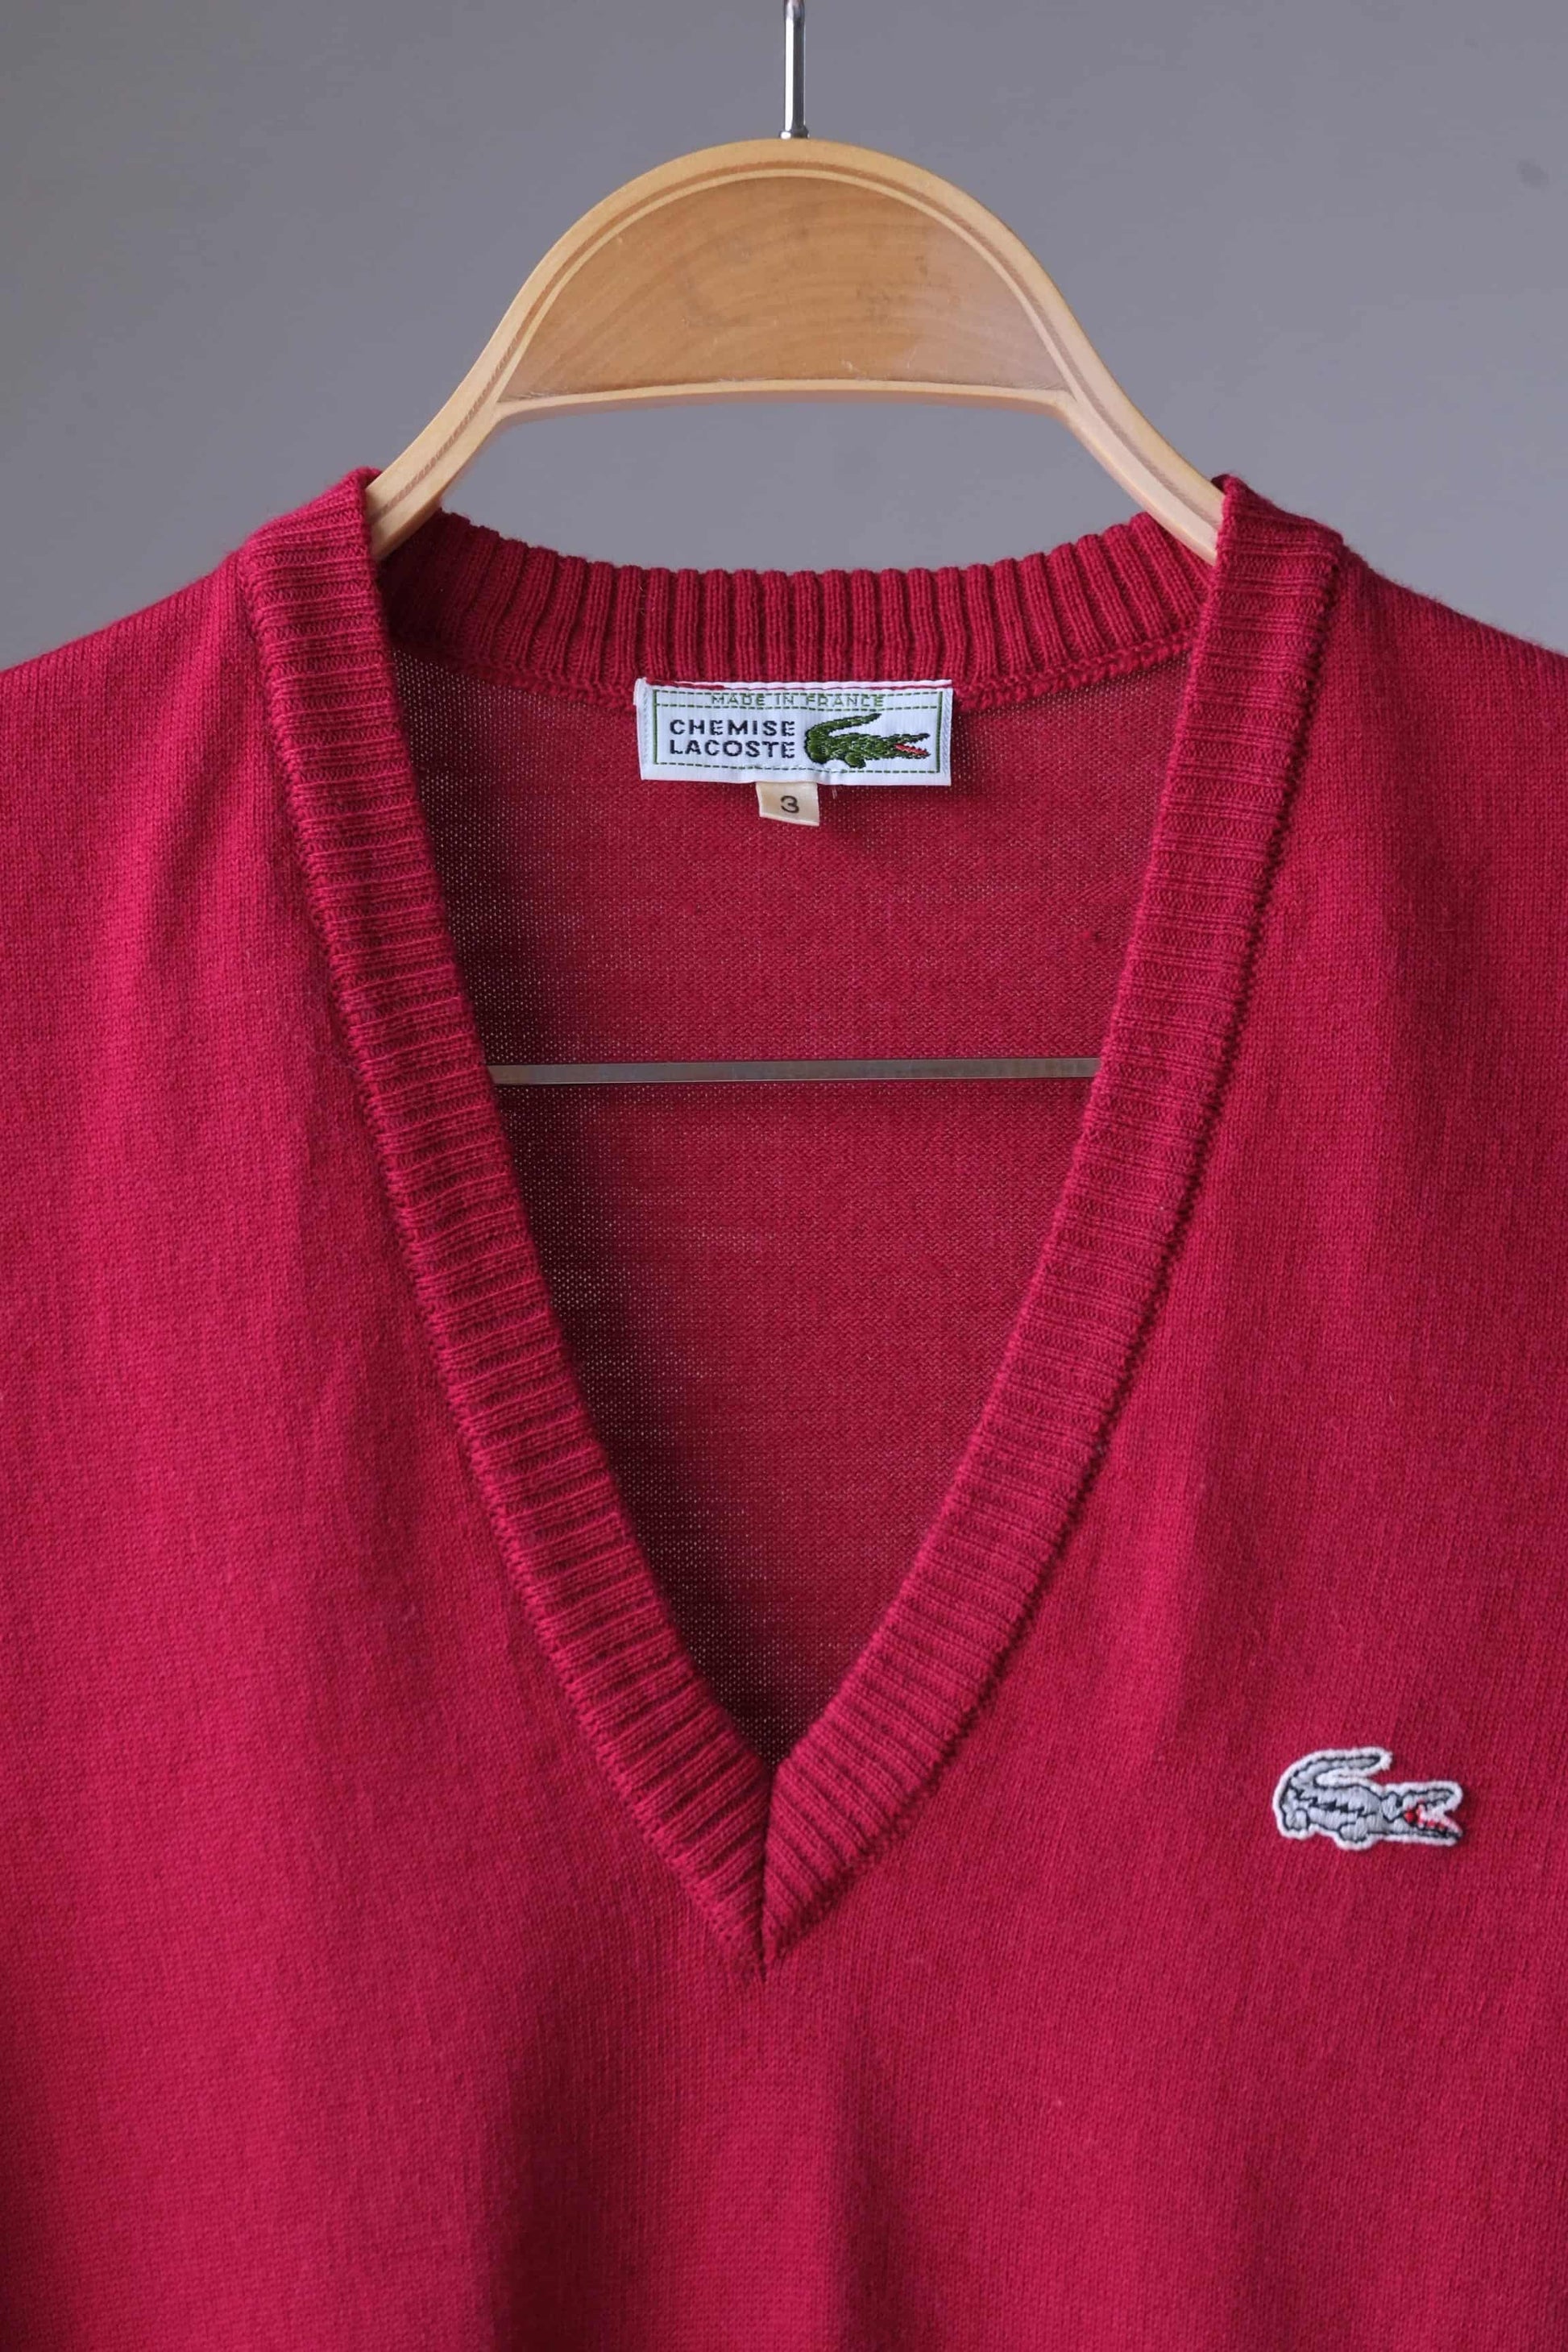 Vintage LACOSTE 80's Sweater Vest close up